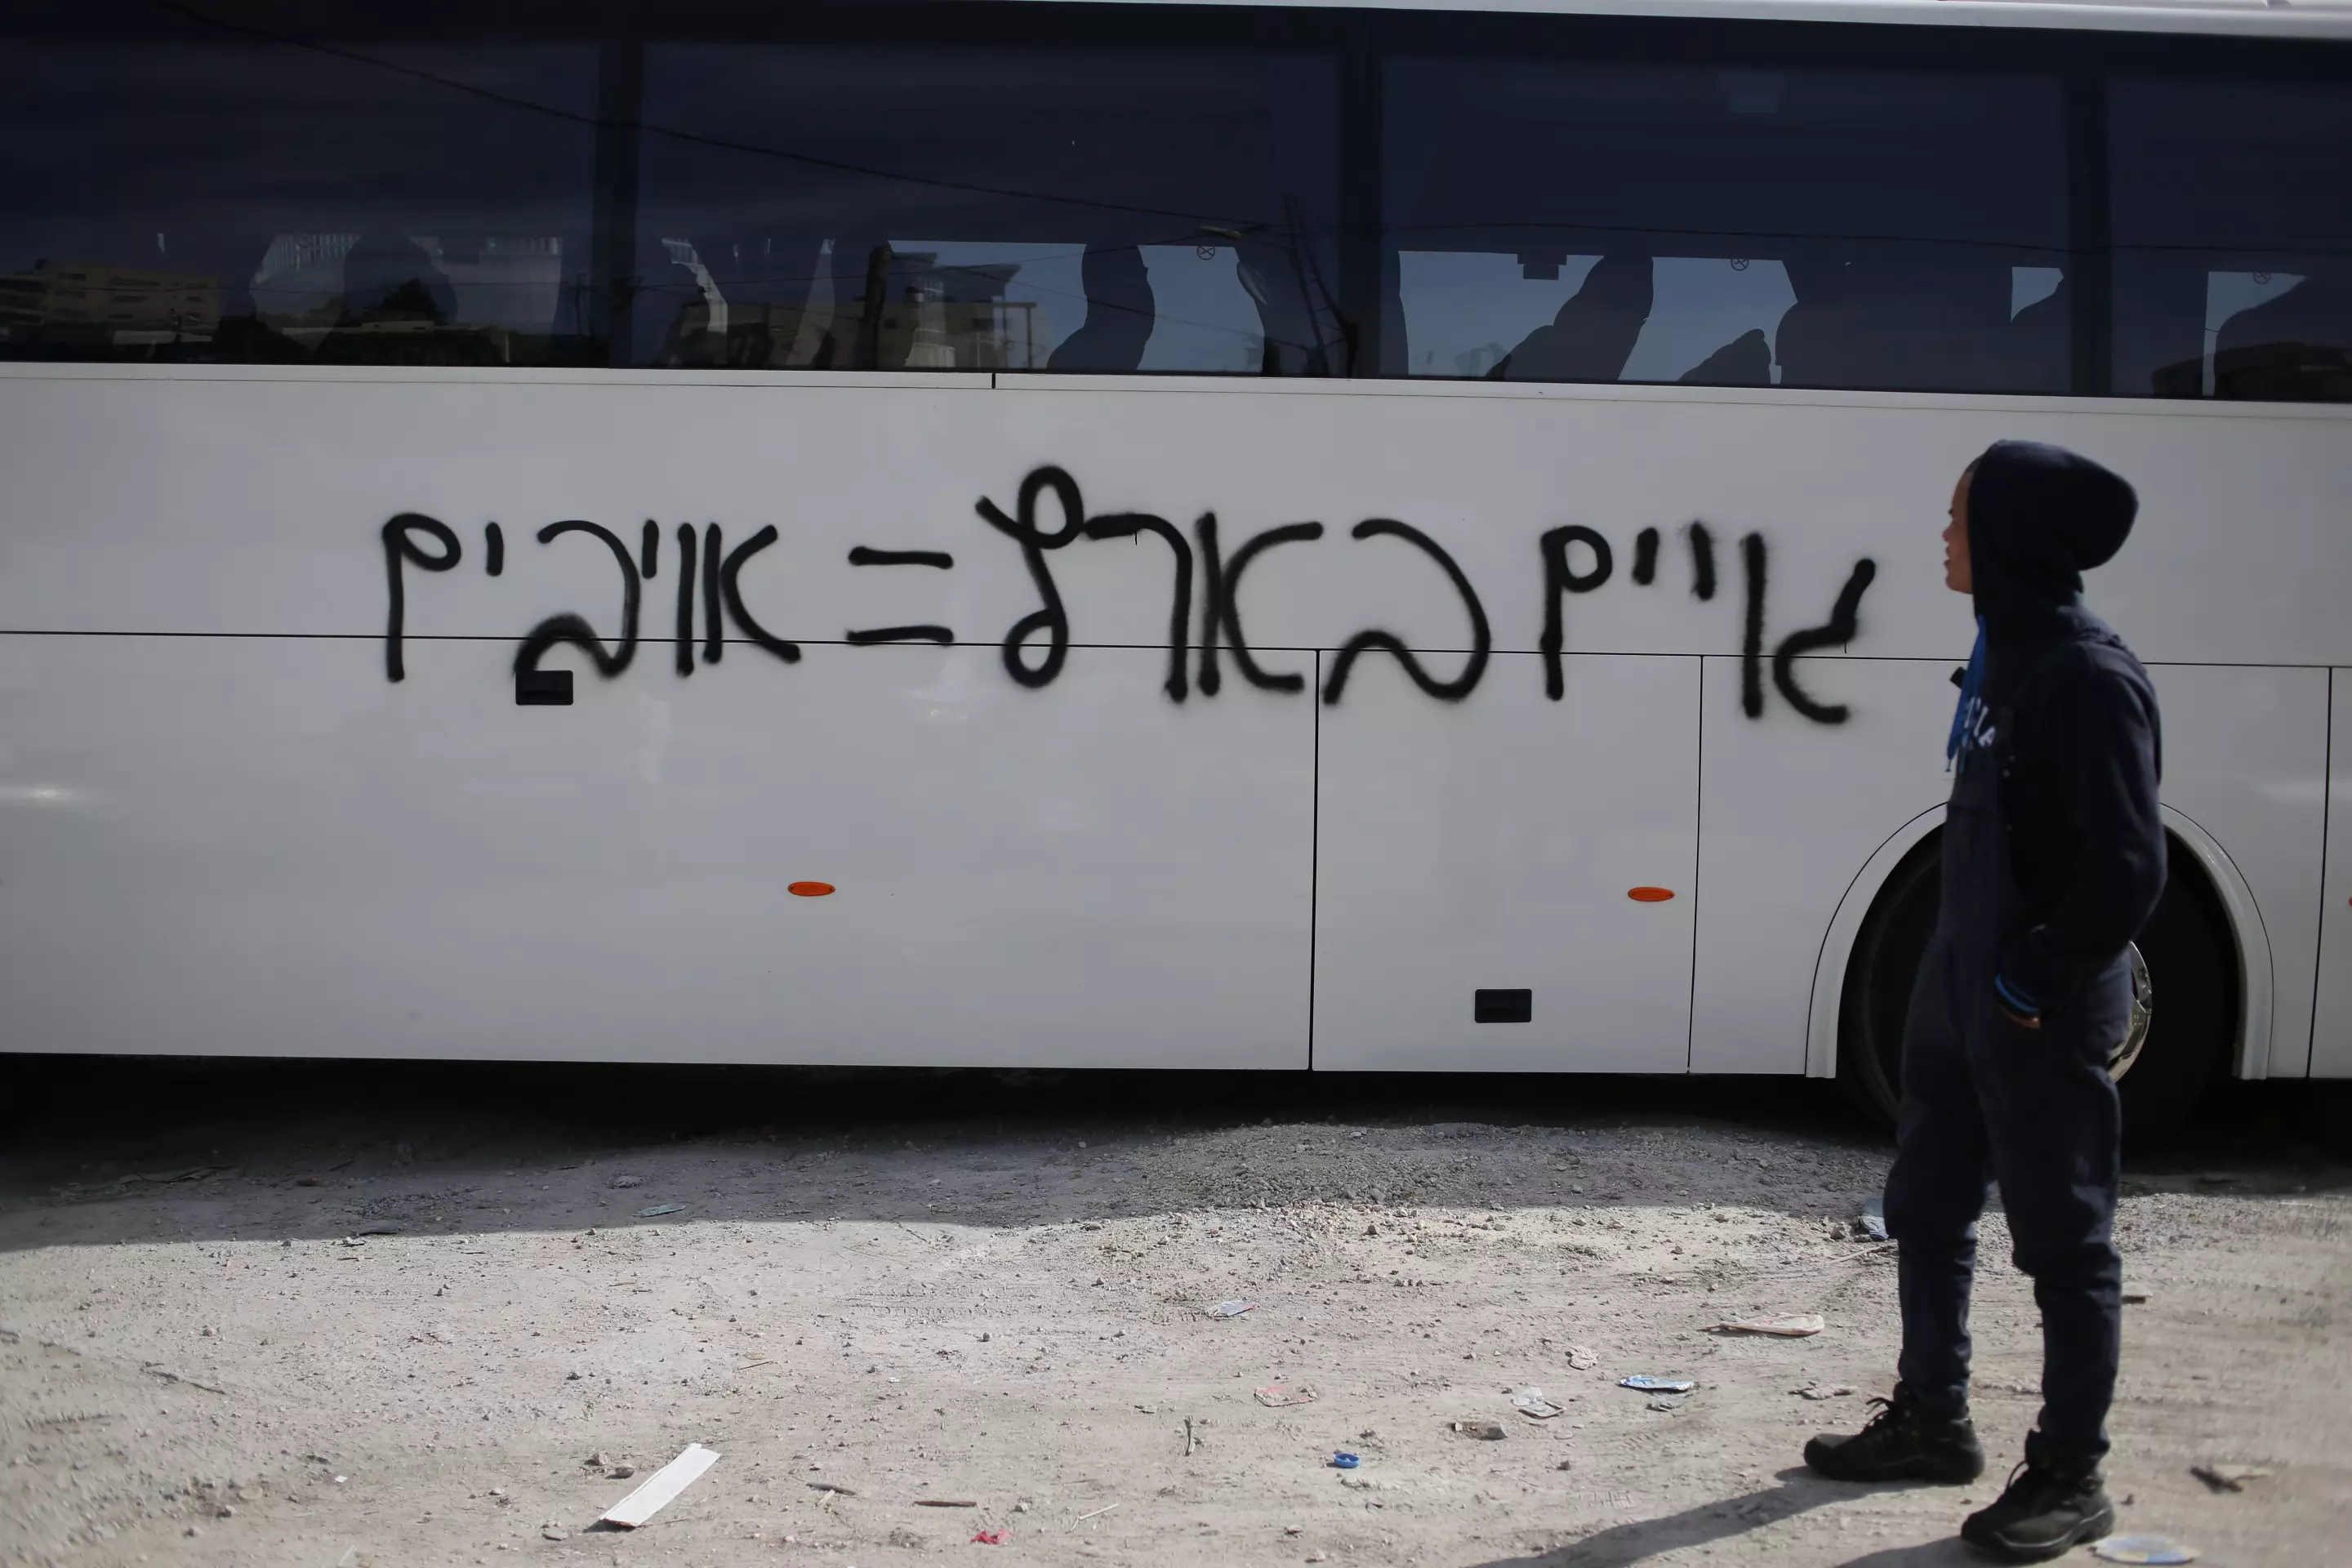 "זה לא טרור". כתובת נאצה על אוטובוס בבית חנינא במזרח ירושלים